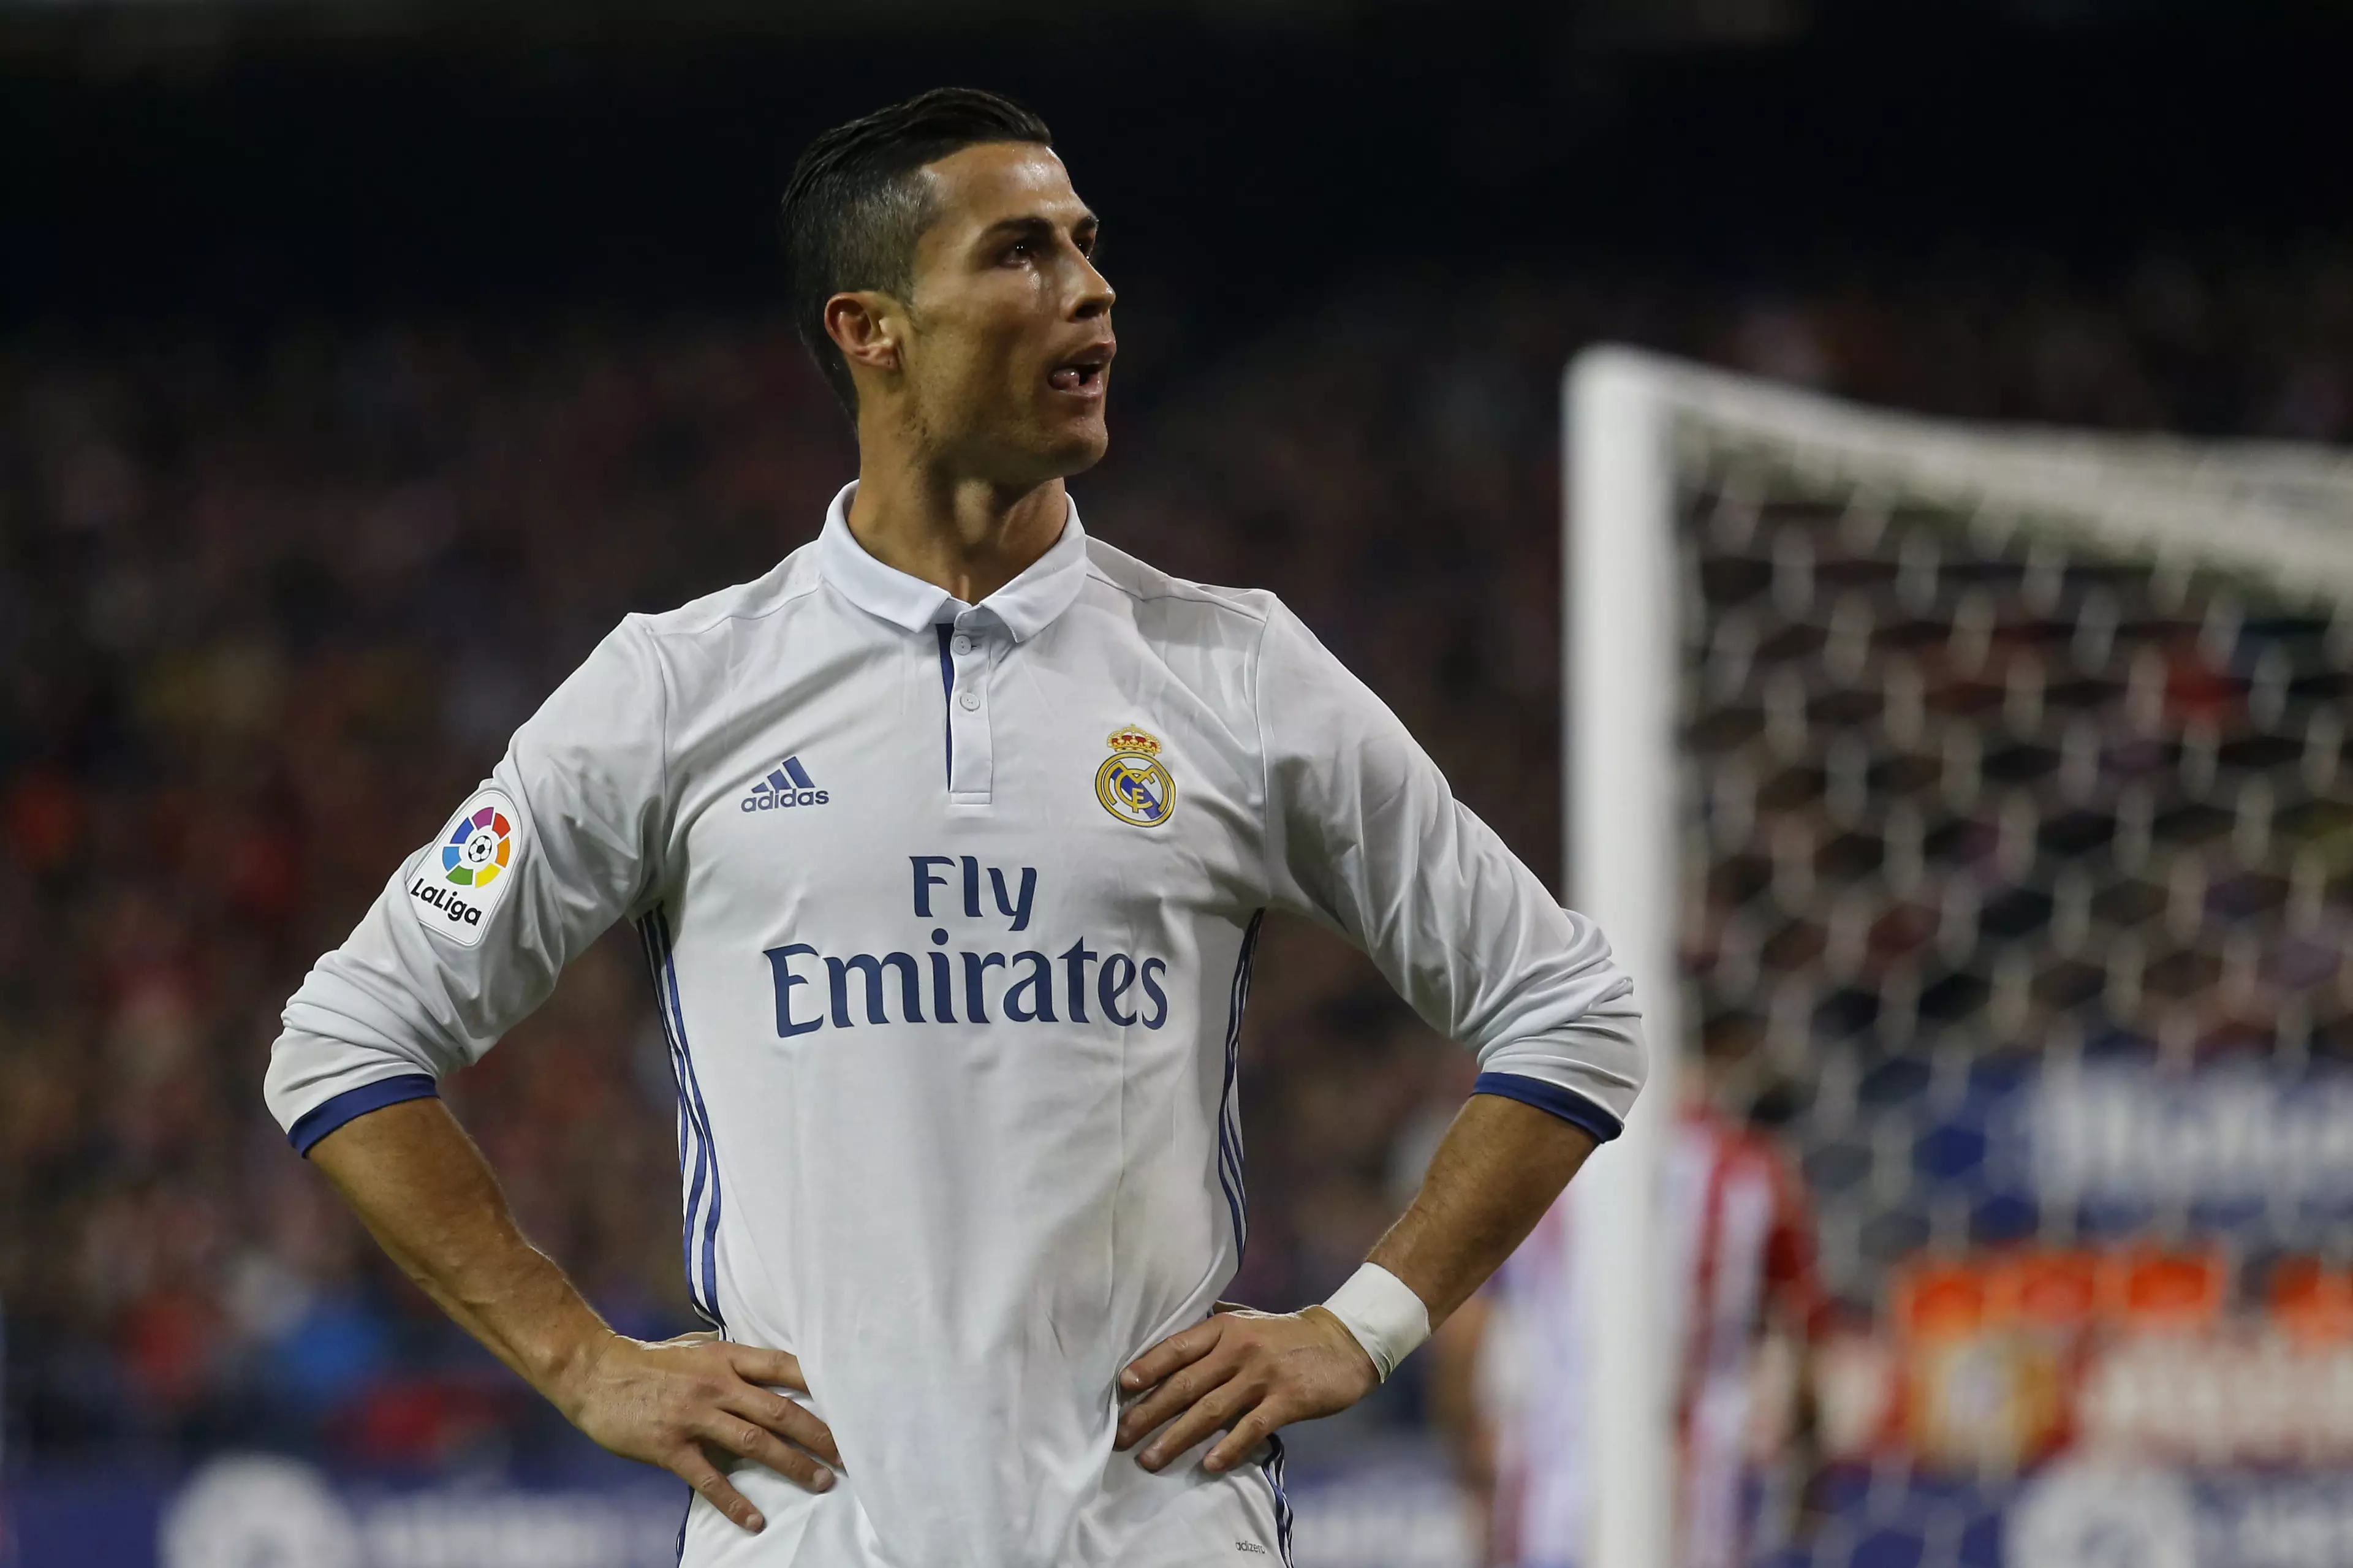 The Real Madrid Goalscoring Records Cristiano Ronaldo Still Has To Beat